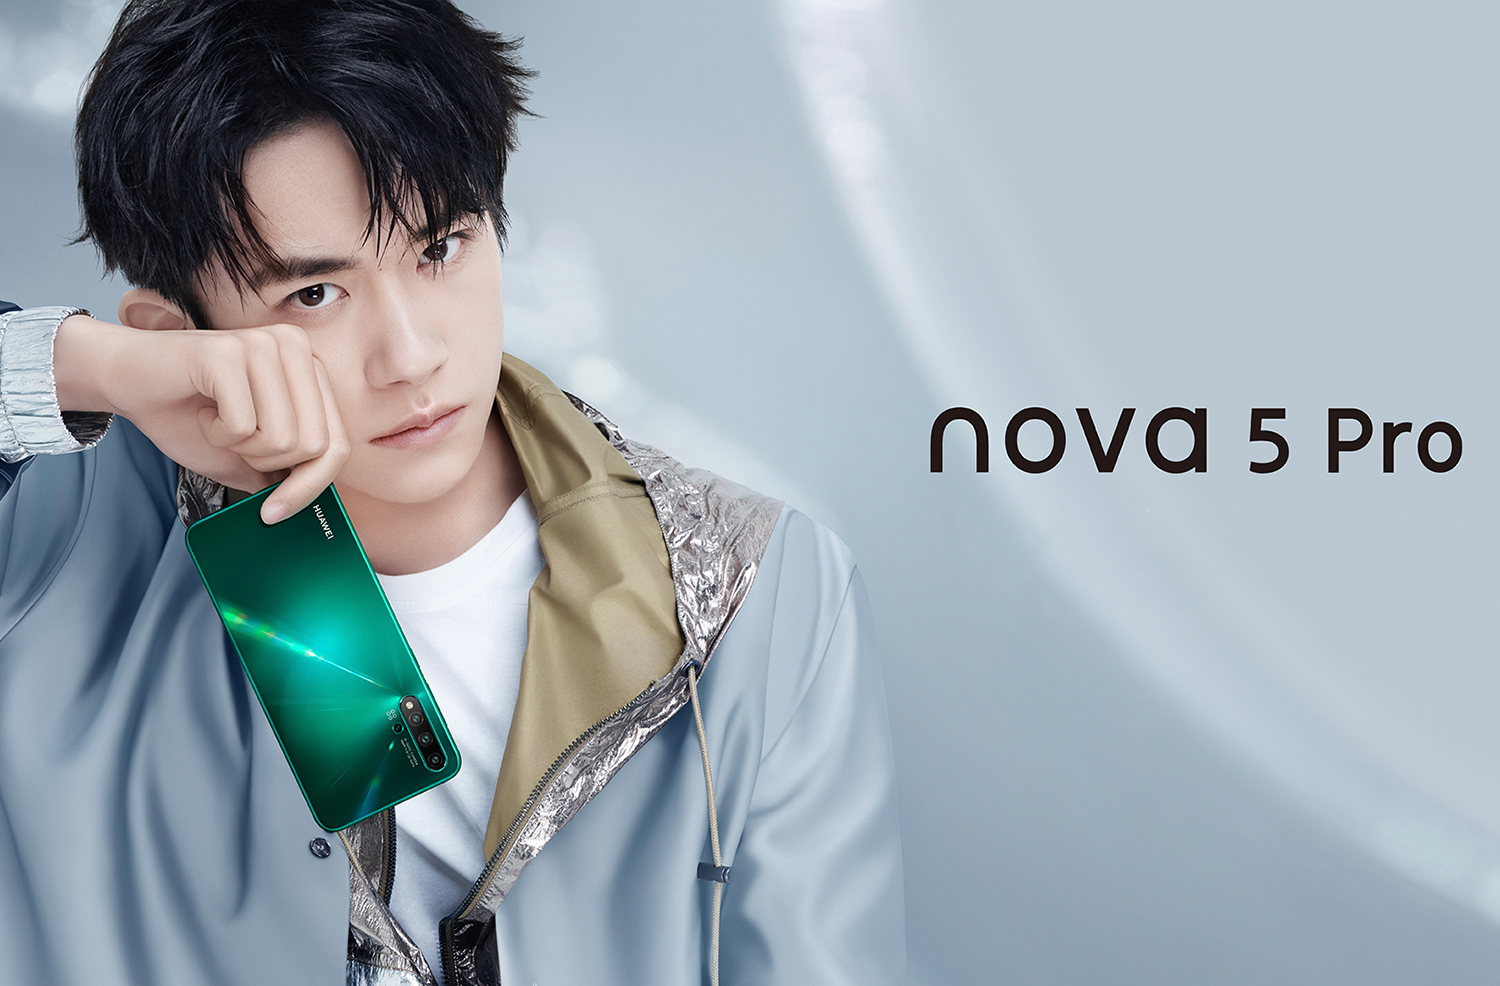 El veto no detiene a Huawei y presenta tres nuevos modelos: Nova 5, Nova 5 Pro y Nova 5i